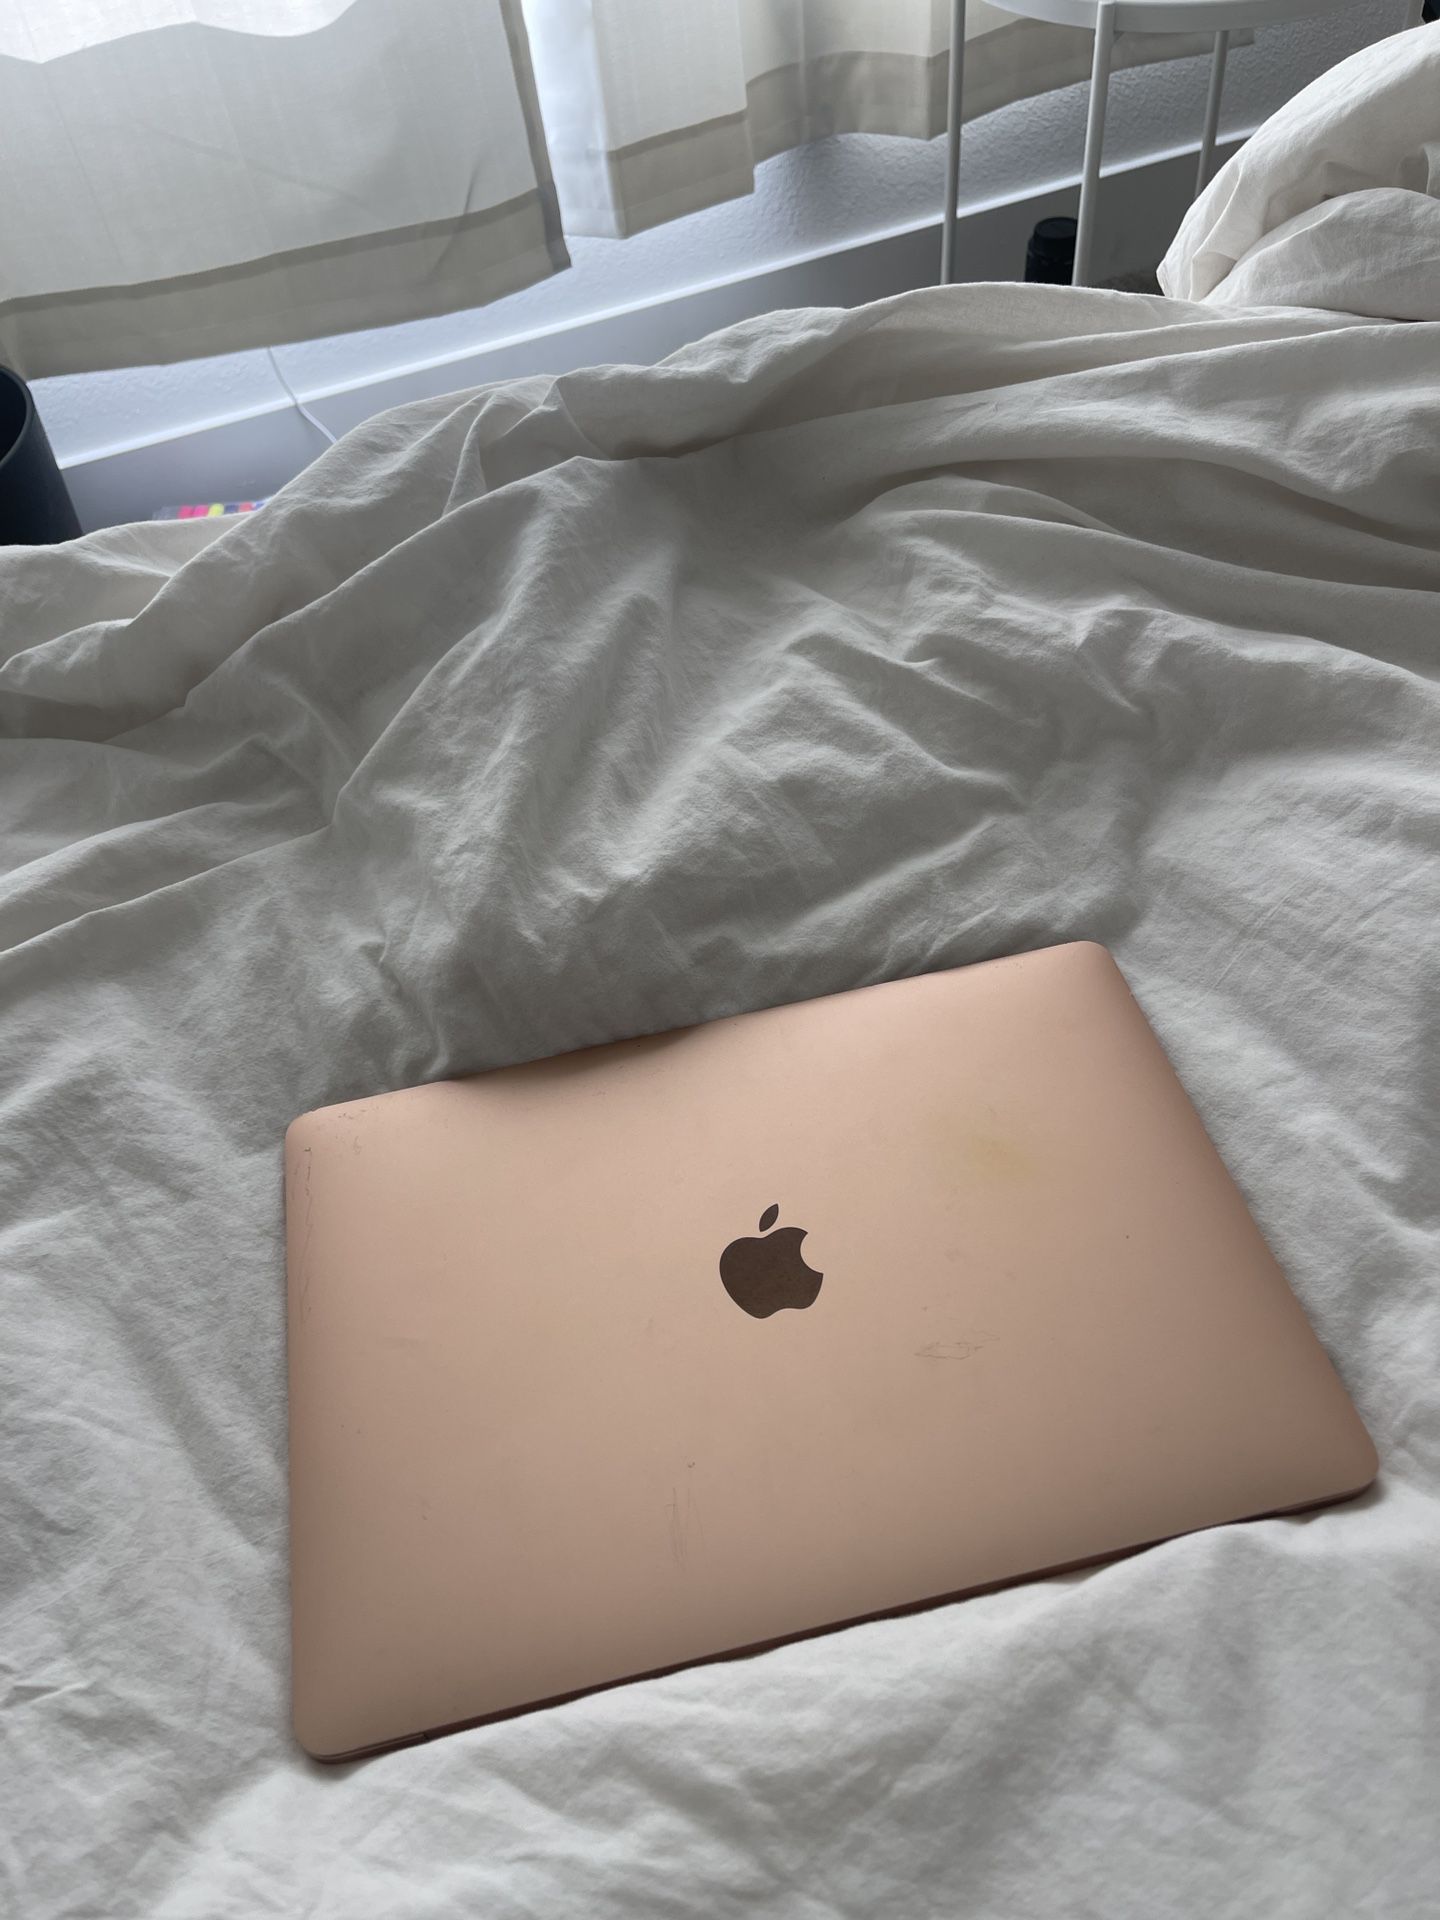 Rose gold MacBook Air